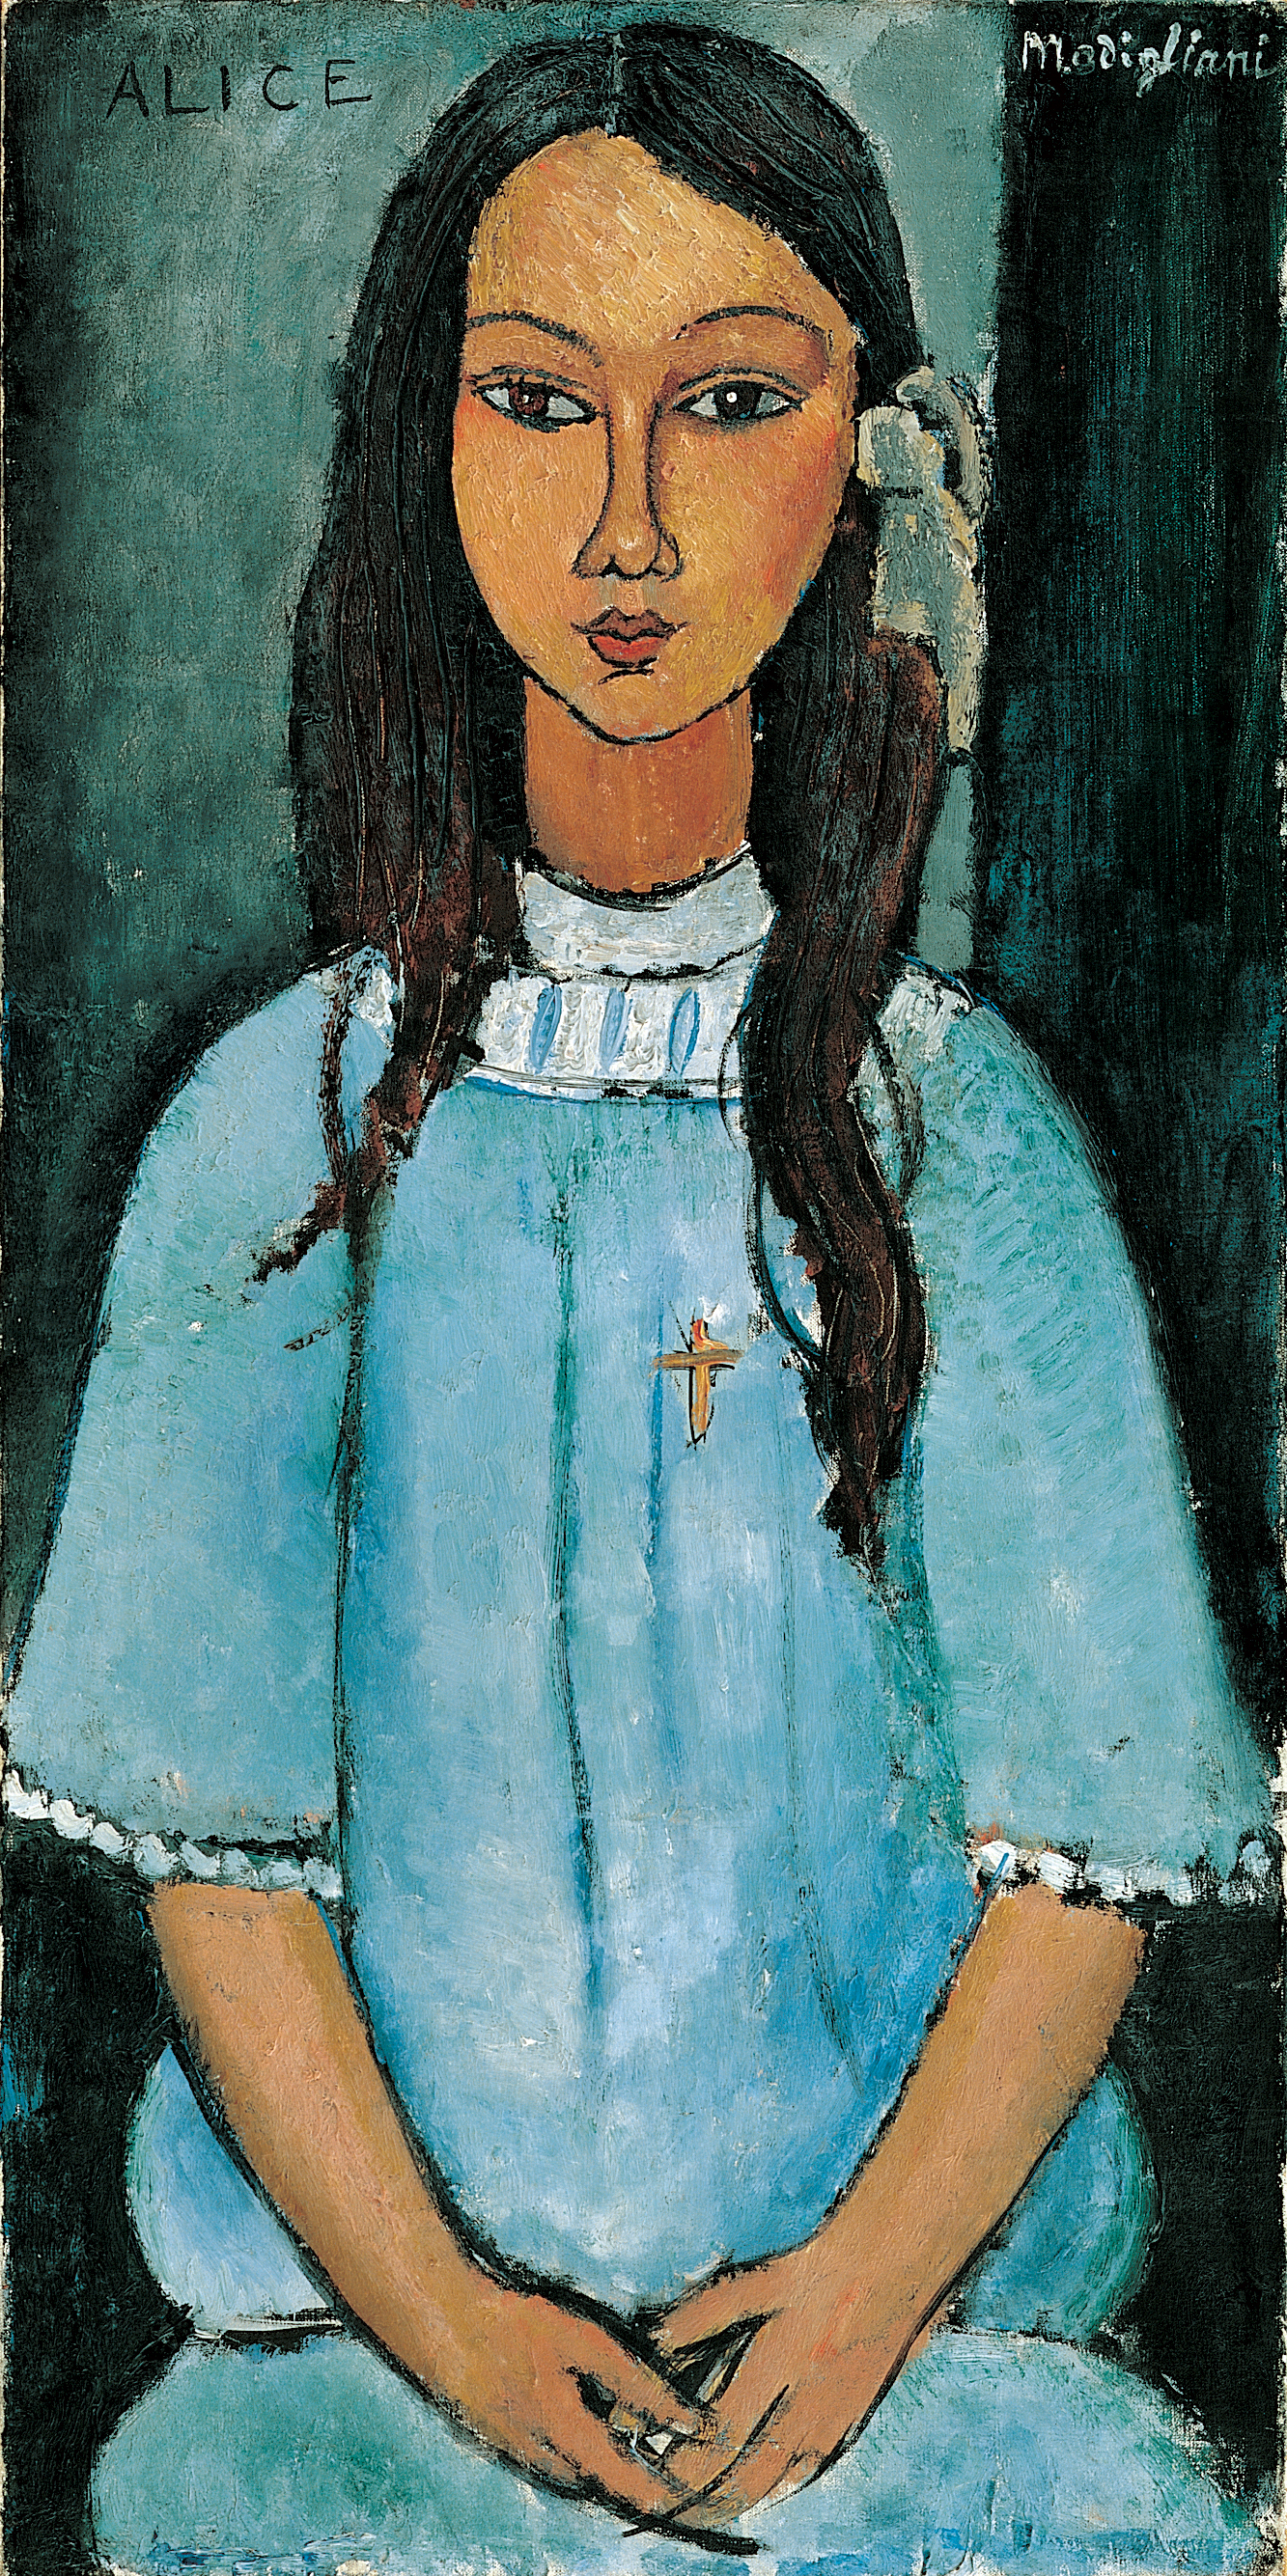 Alice by Amedeo Modigliani - 1918 - 39 x 78.5 cm SMK - Staatsmuseum voor Kunst